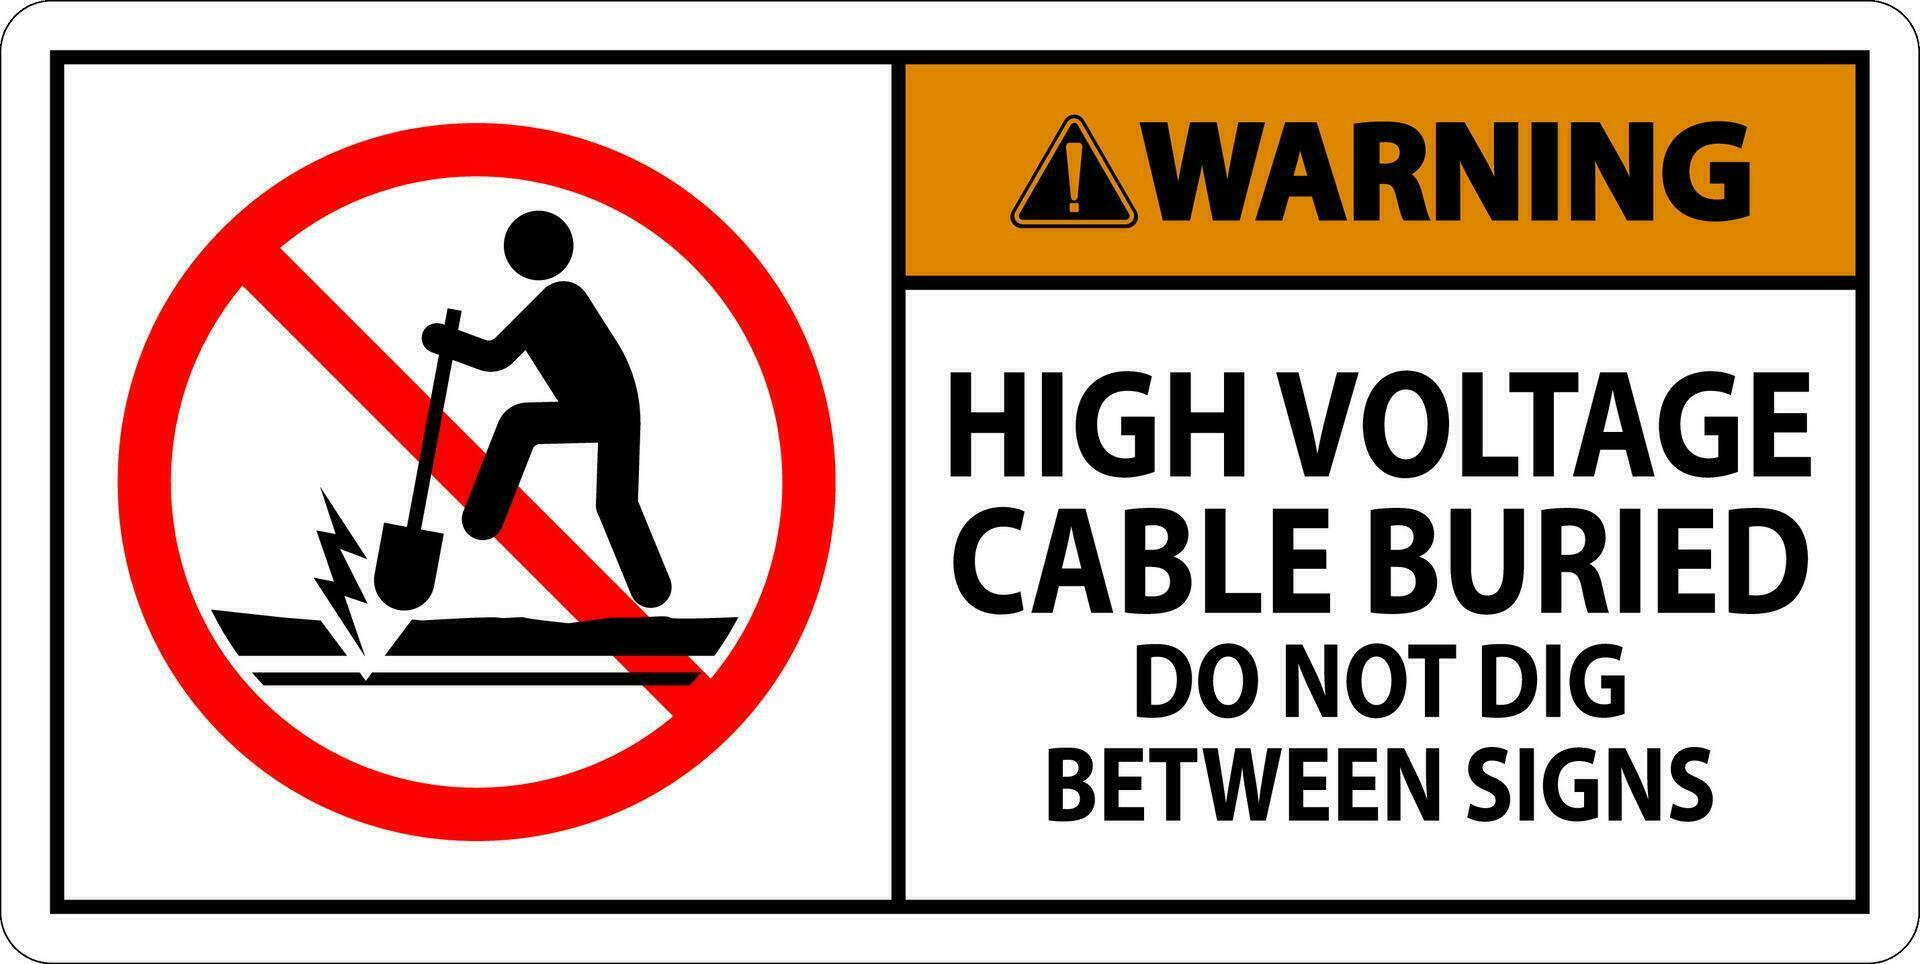 Warnung Zeichen hoch Stromspannung Kabel begraben. tun nicht graben zwischen Zeichen vektor